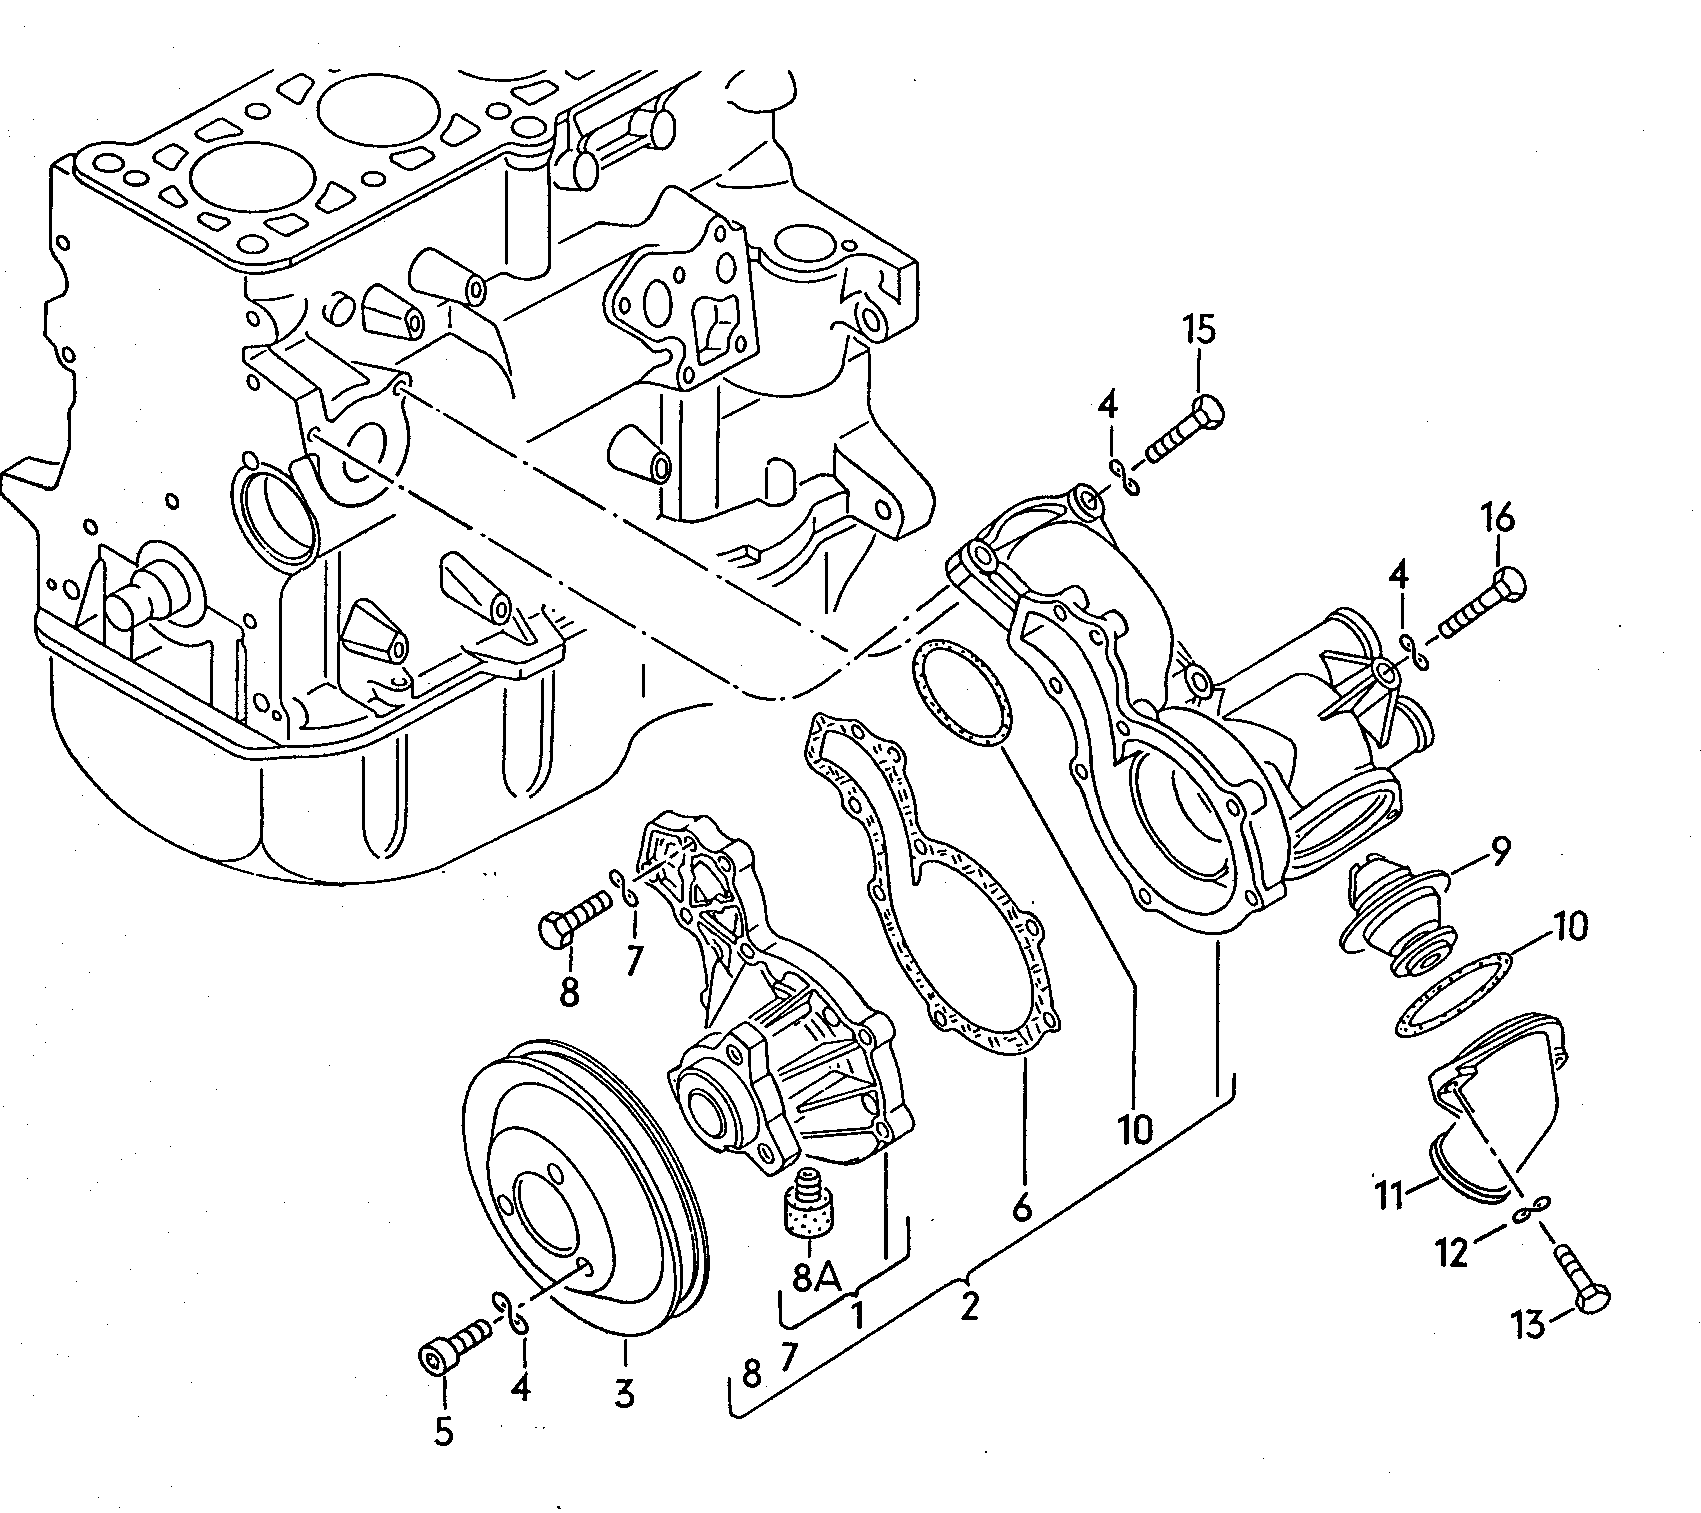 Coolant pump 1.8ltr. - Audi 100 - a10